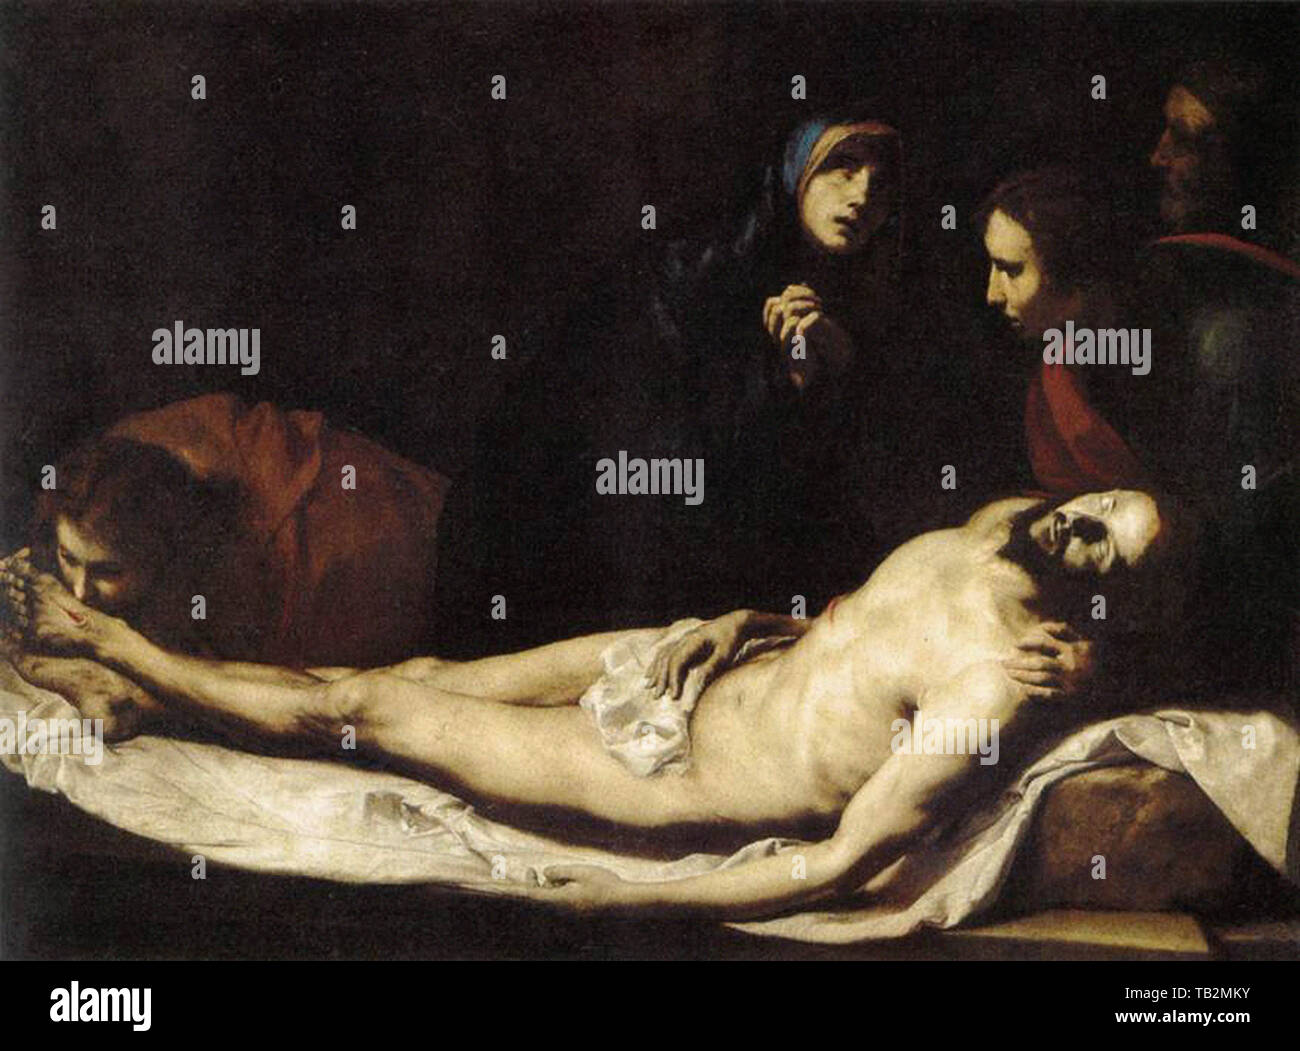 Jusepe De Ribera - Lamentation 1633 Stock Photo